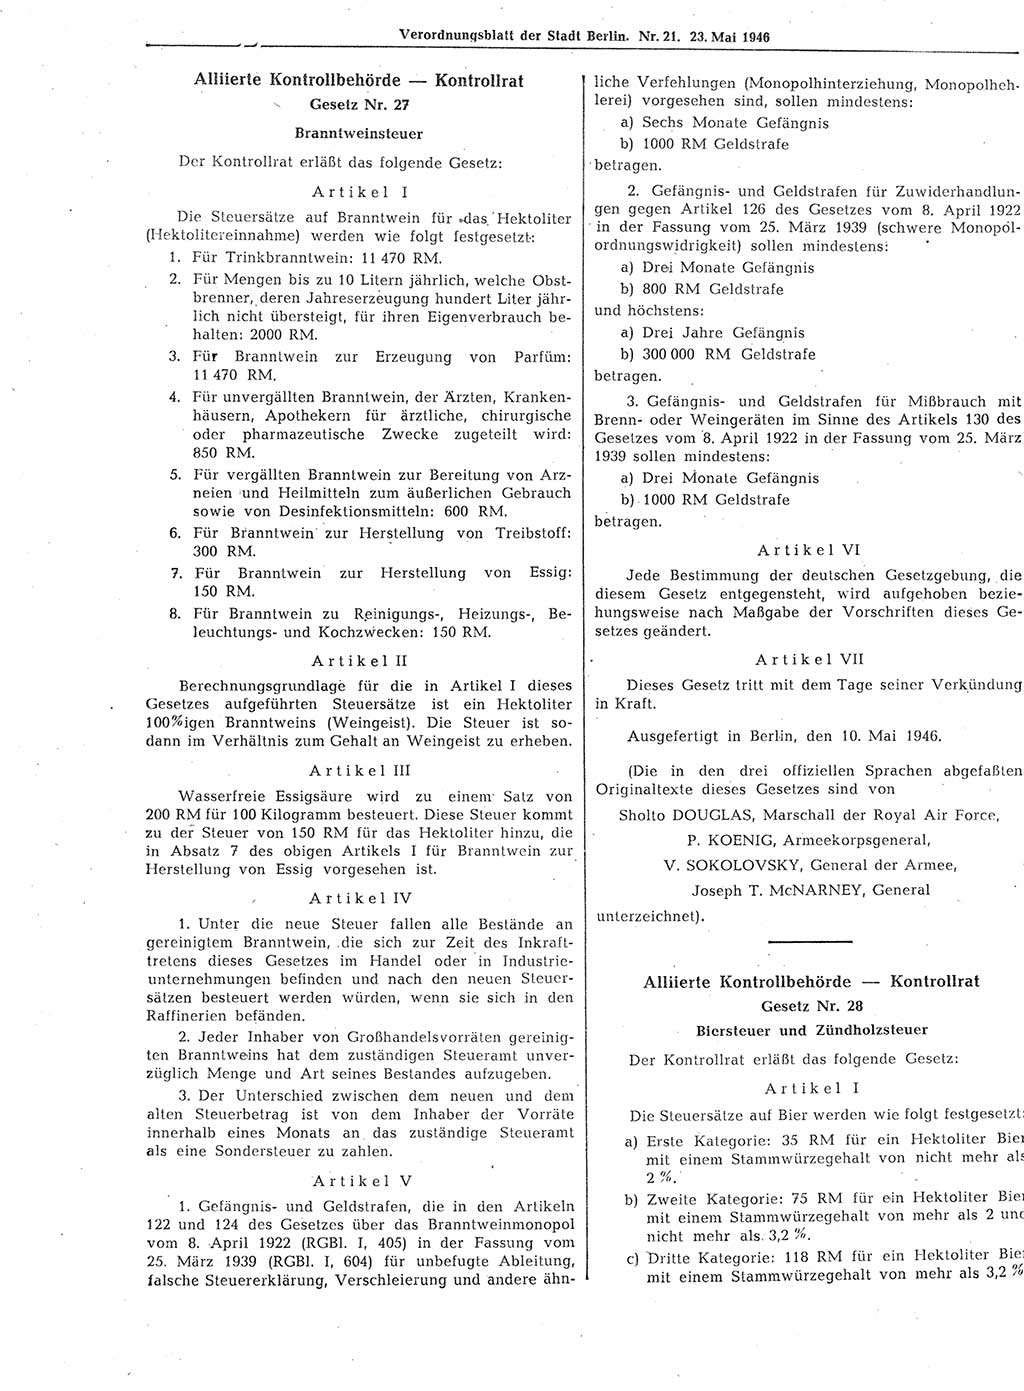 Verordnungsblatt (VOBl.) der Stadt Berlin, für Groß-Berlin 1946, Seite 162 (VOBl. Bln. 1946, S. 162)